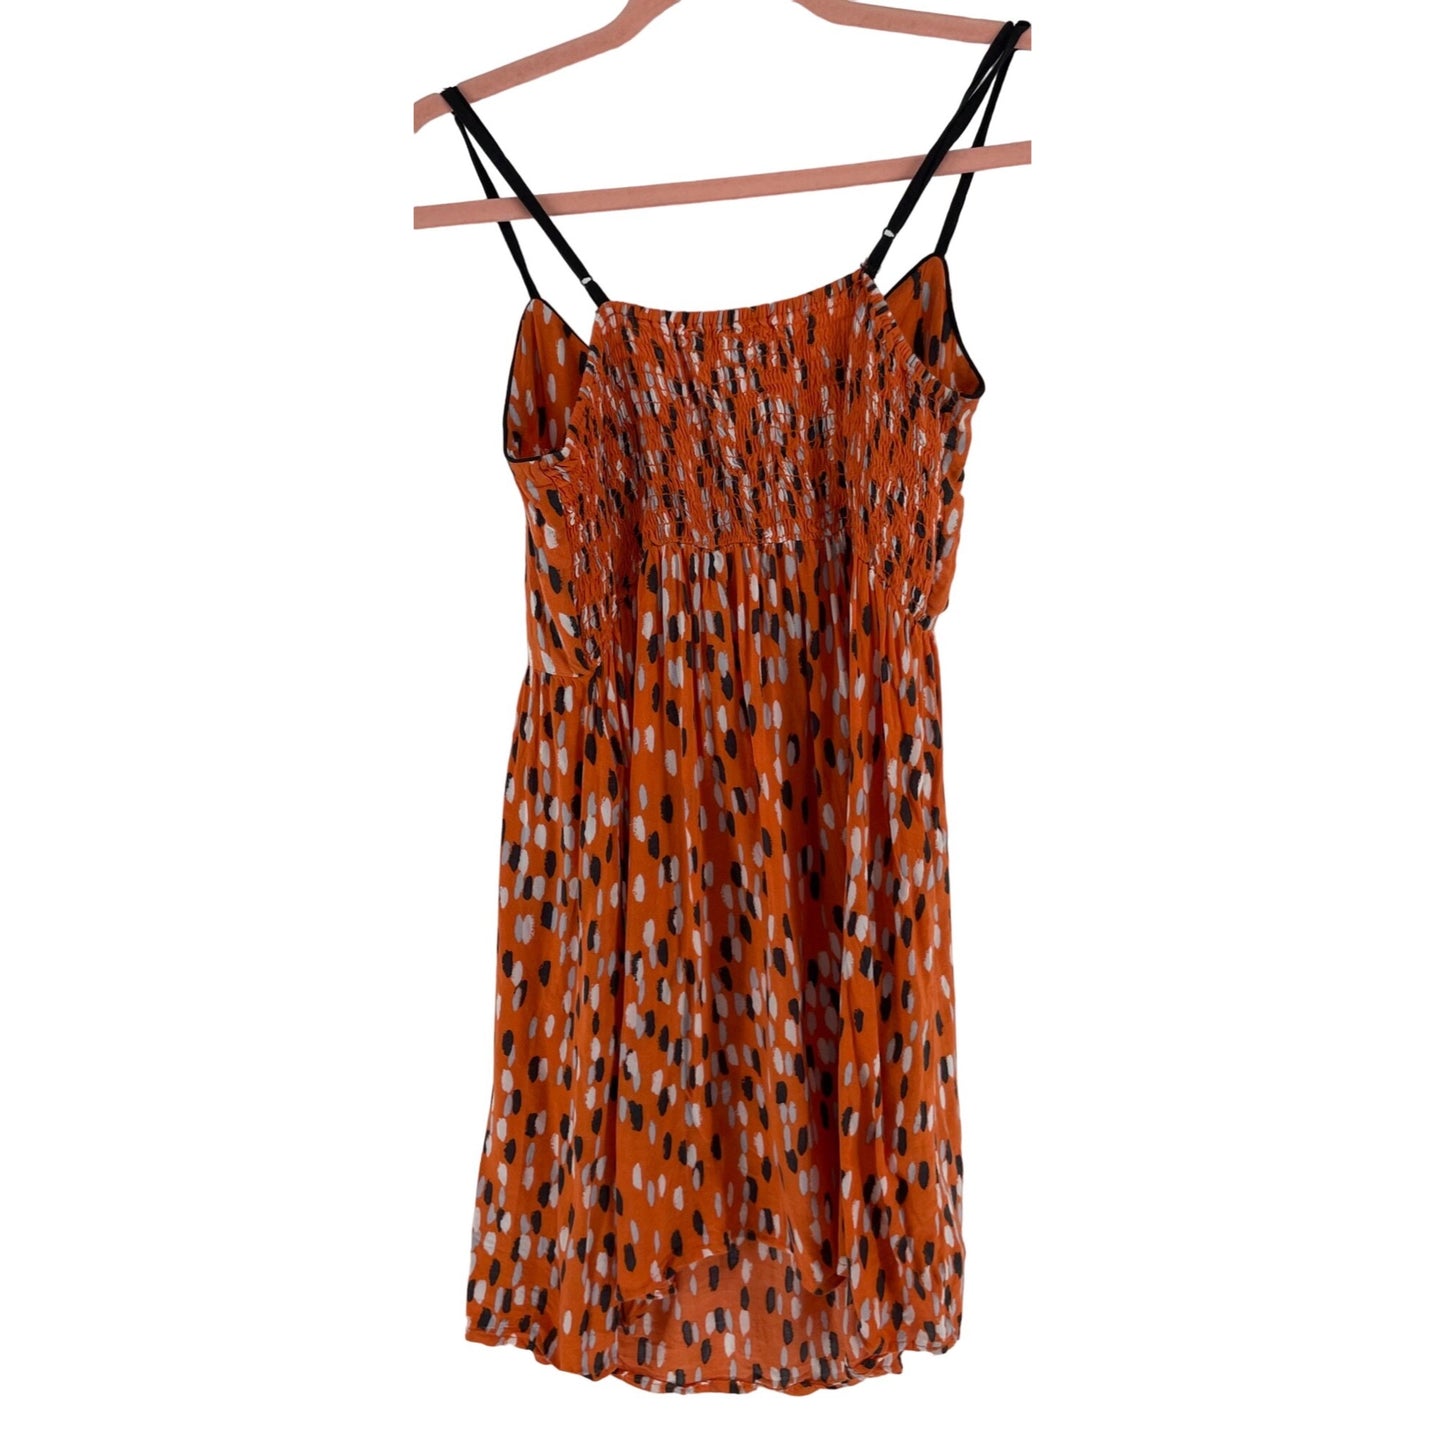 Fire Los Angeles Women's Size Small Orange/Black/White Spaghetti Strap Mini Dress